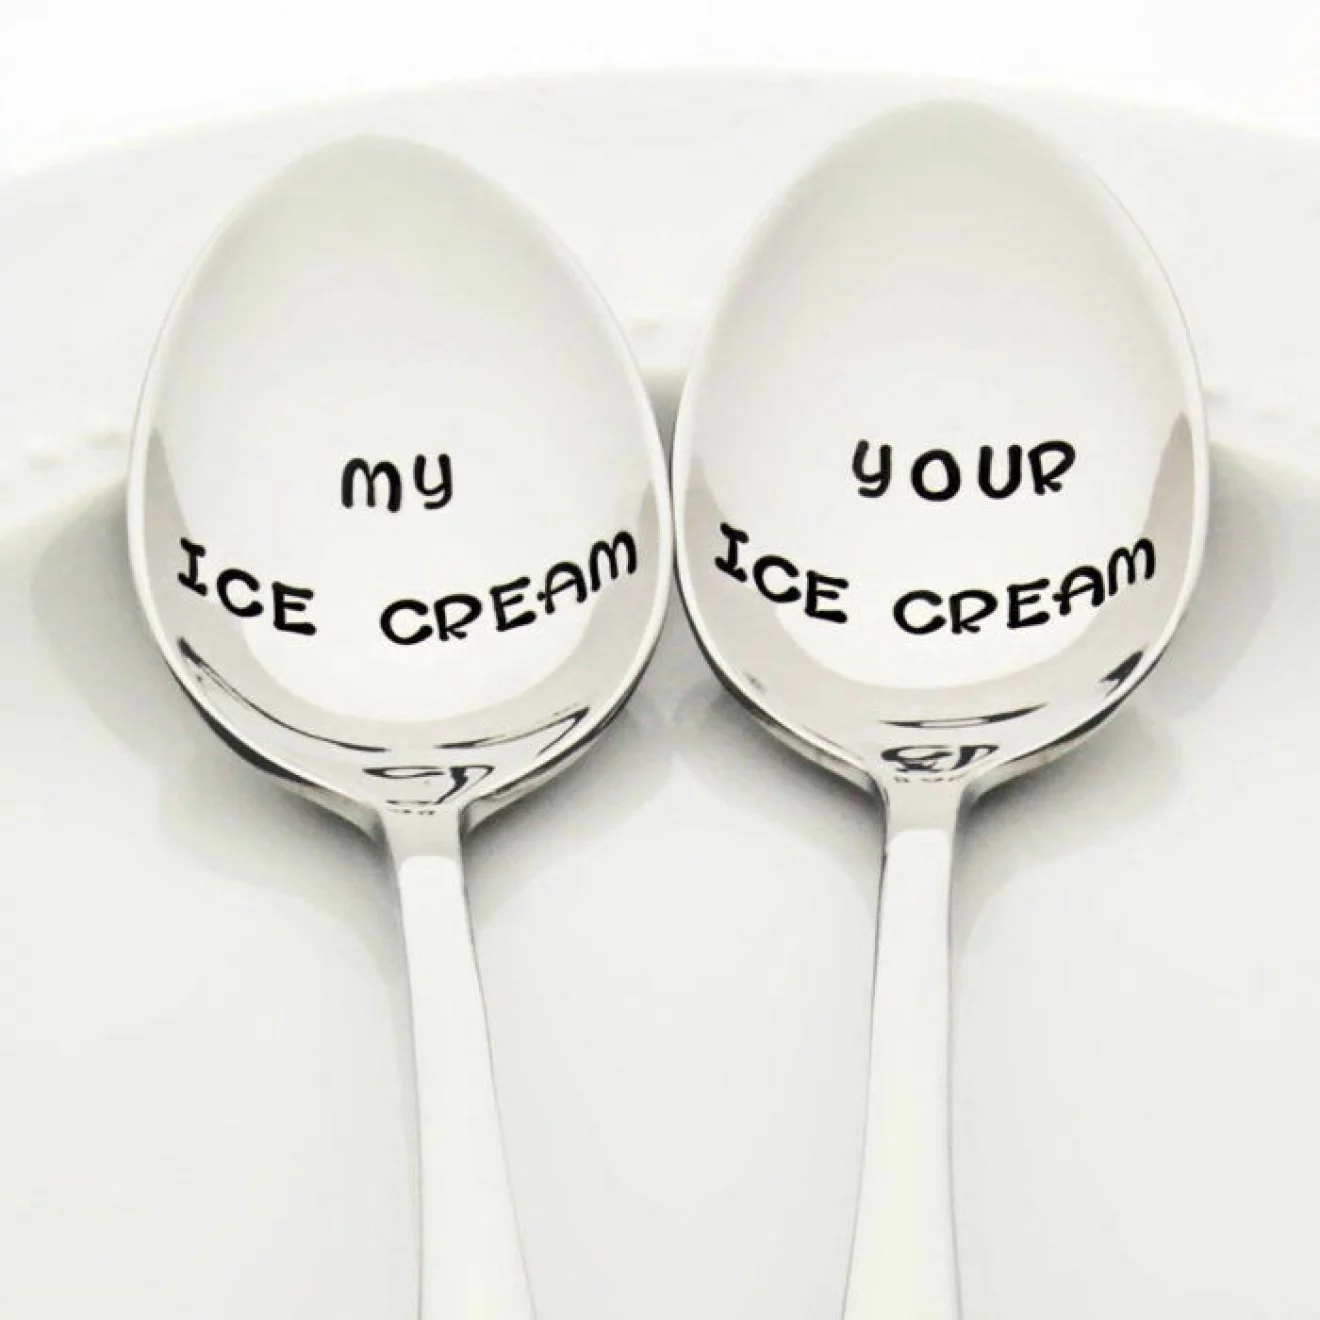 Glasskedar med inskriptionerna My ice cream och Your ice cream. 